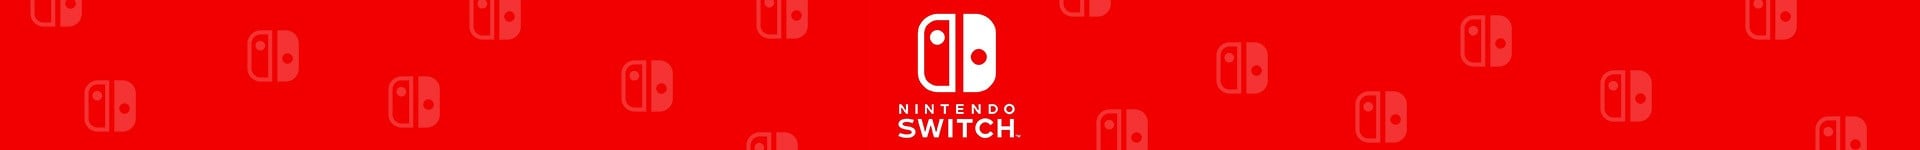 Nintendo Switch Spiele